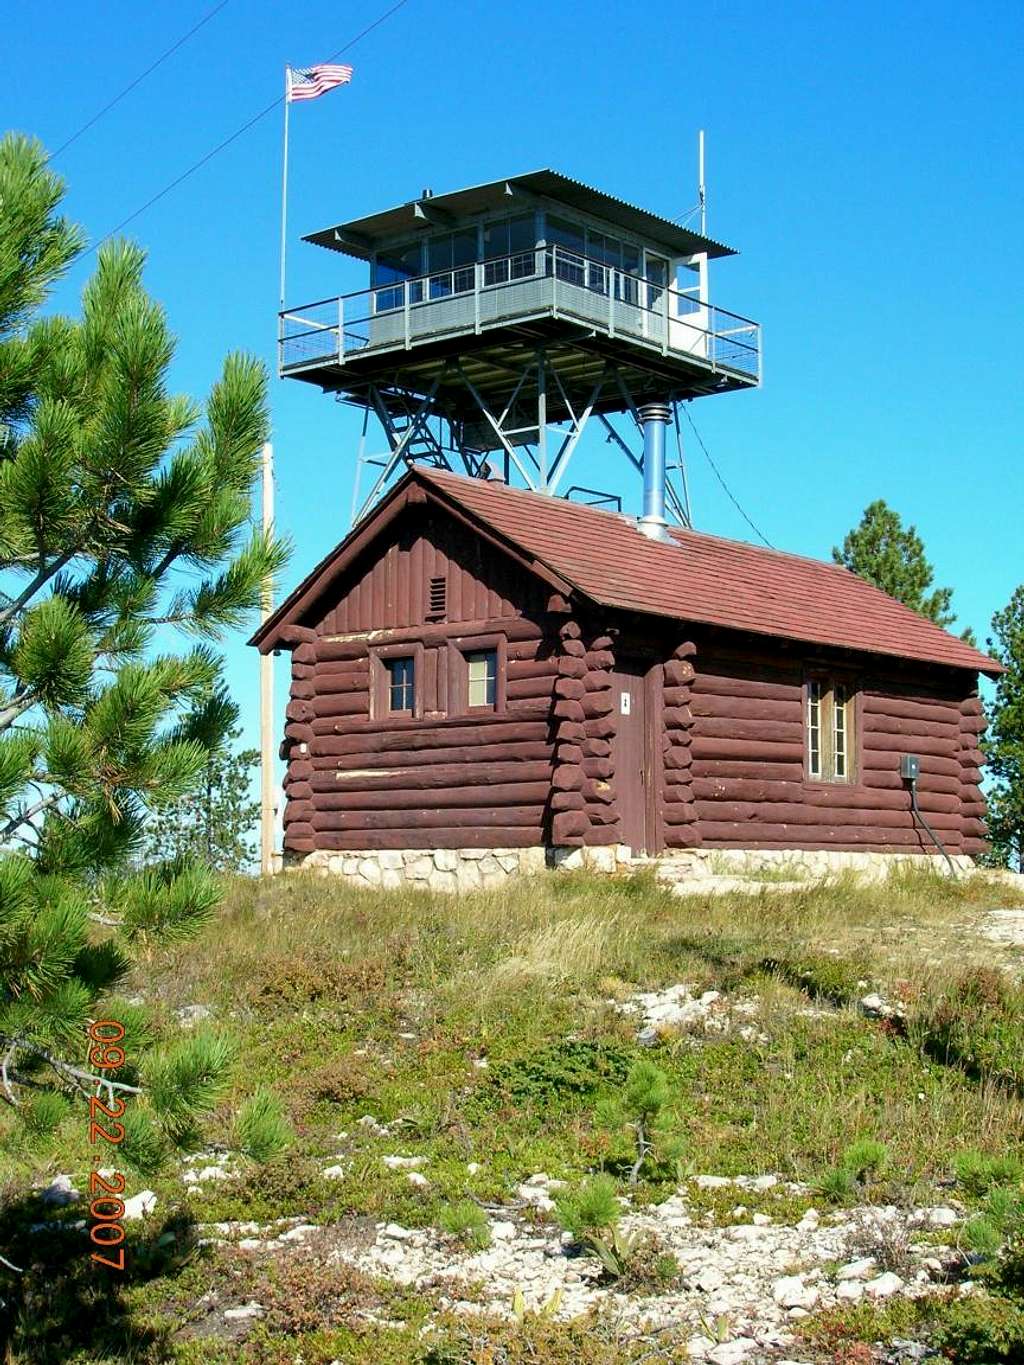 Bear Mountain Firetower